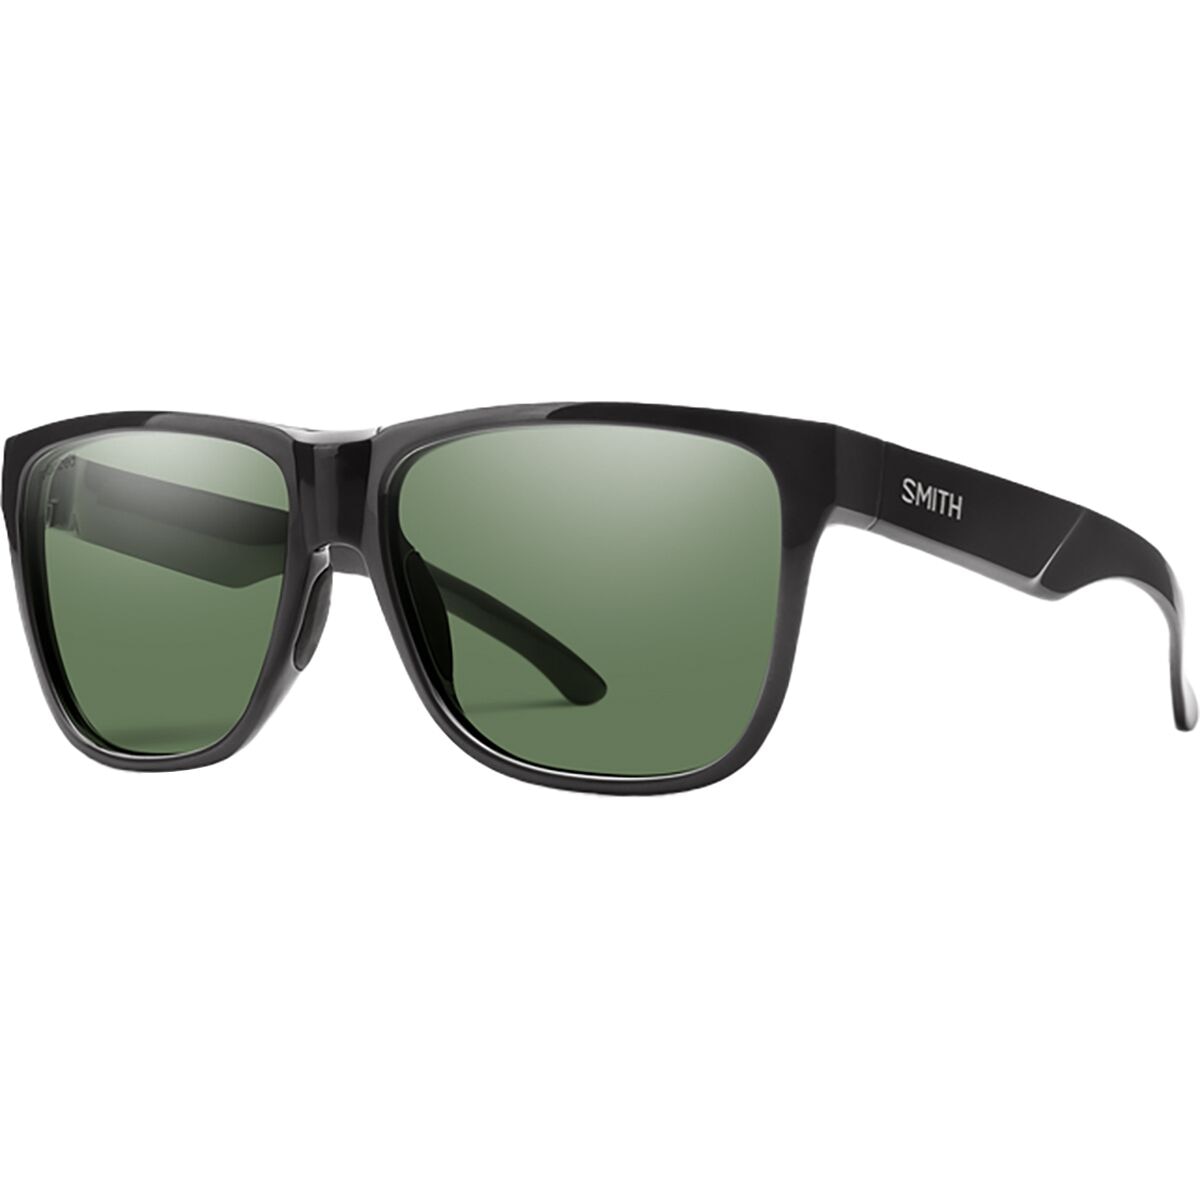 Поляризованные солнцезащитные очки Smith Lowdown XL 2 Smith